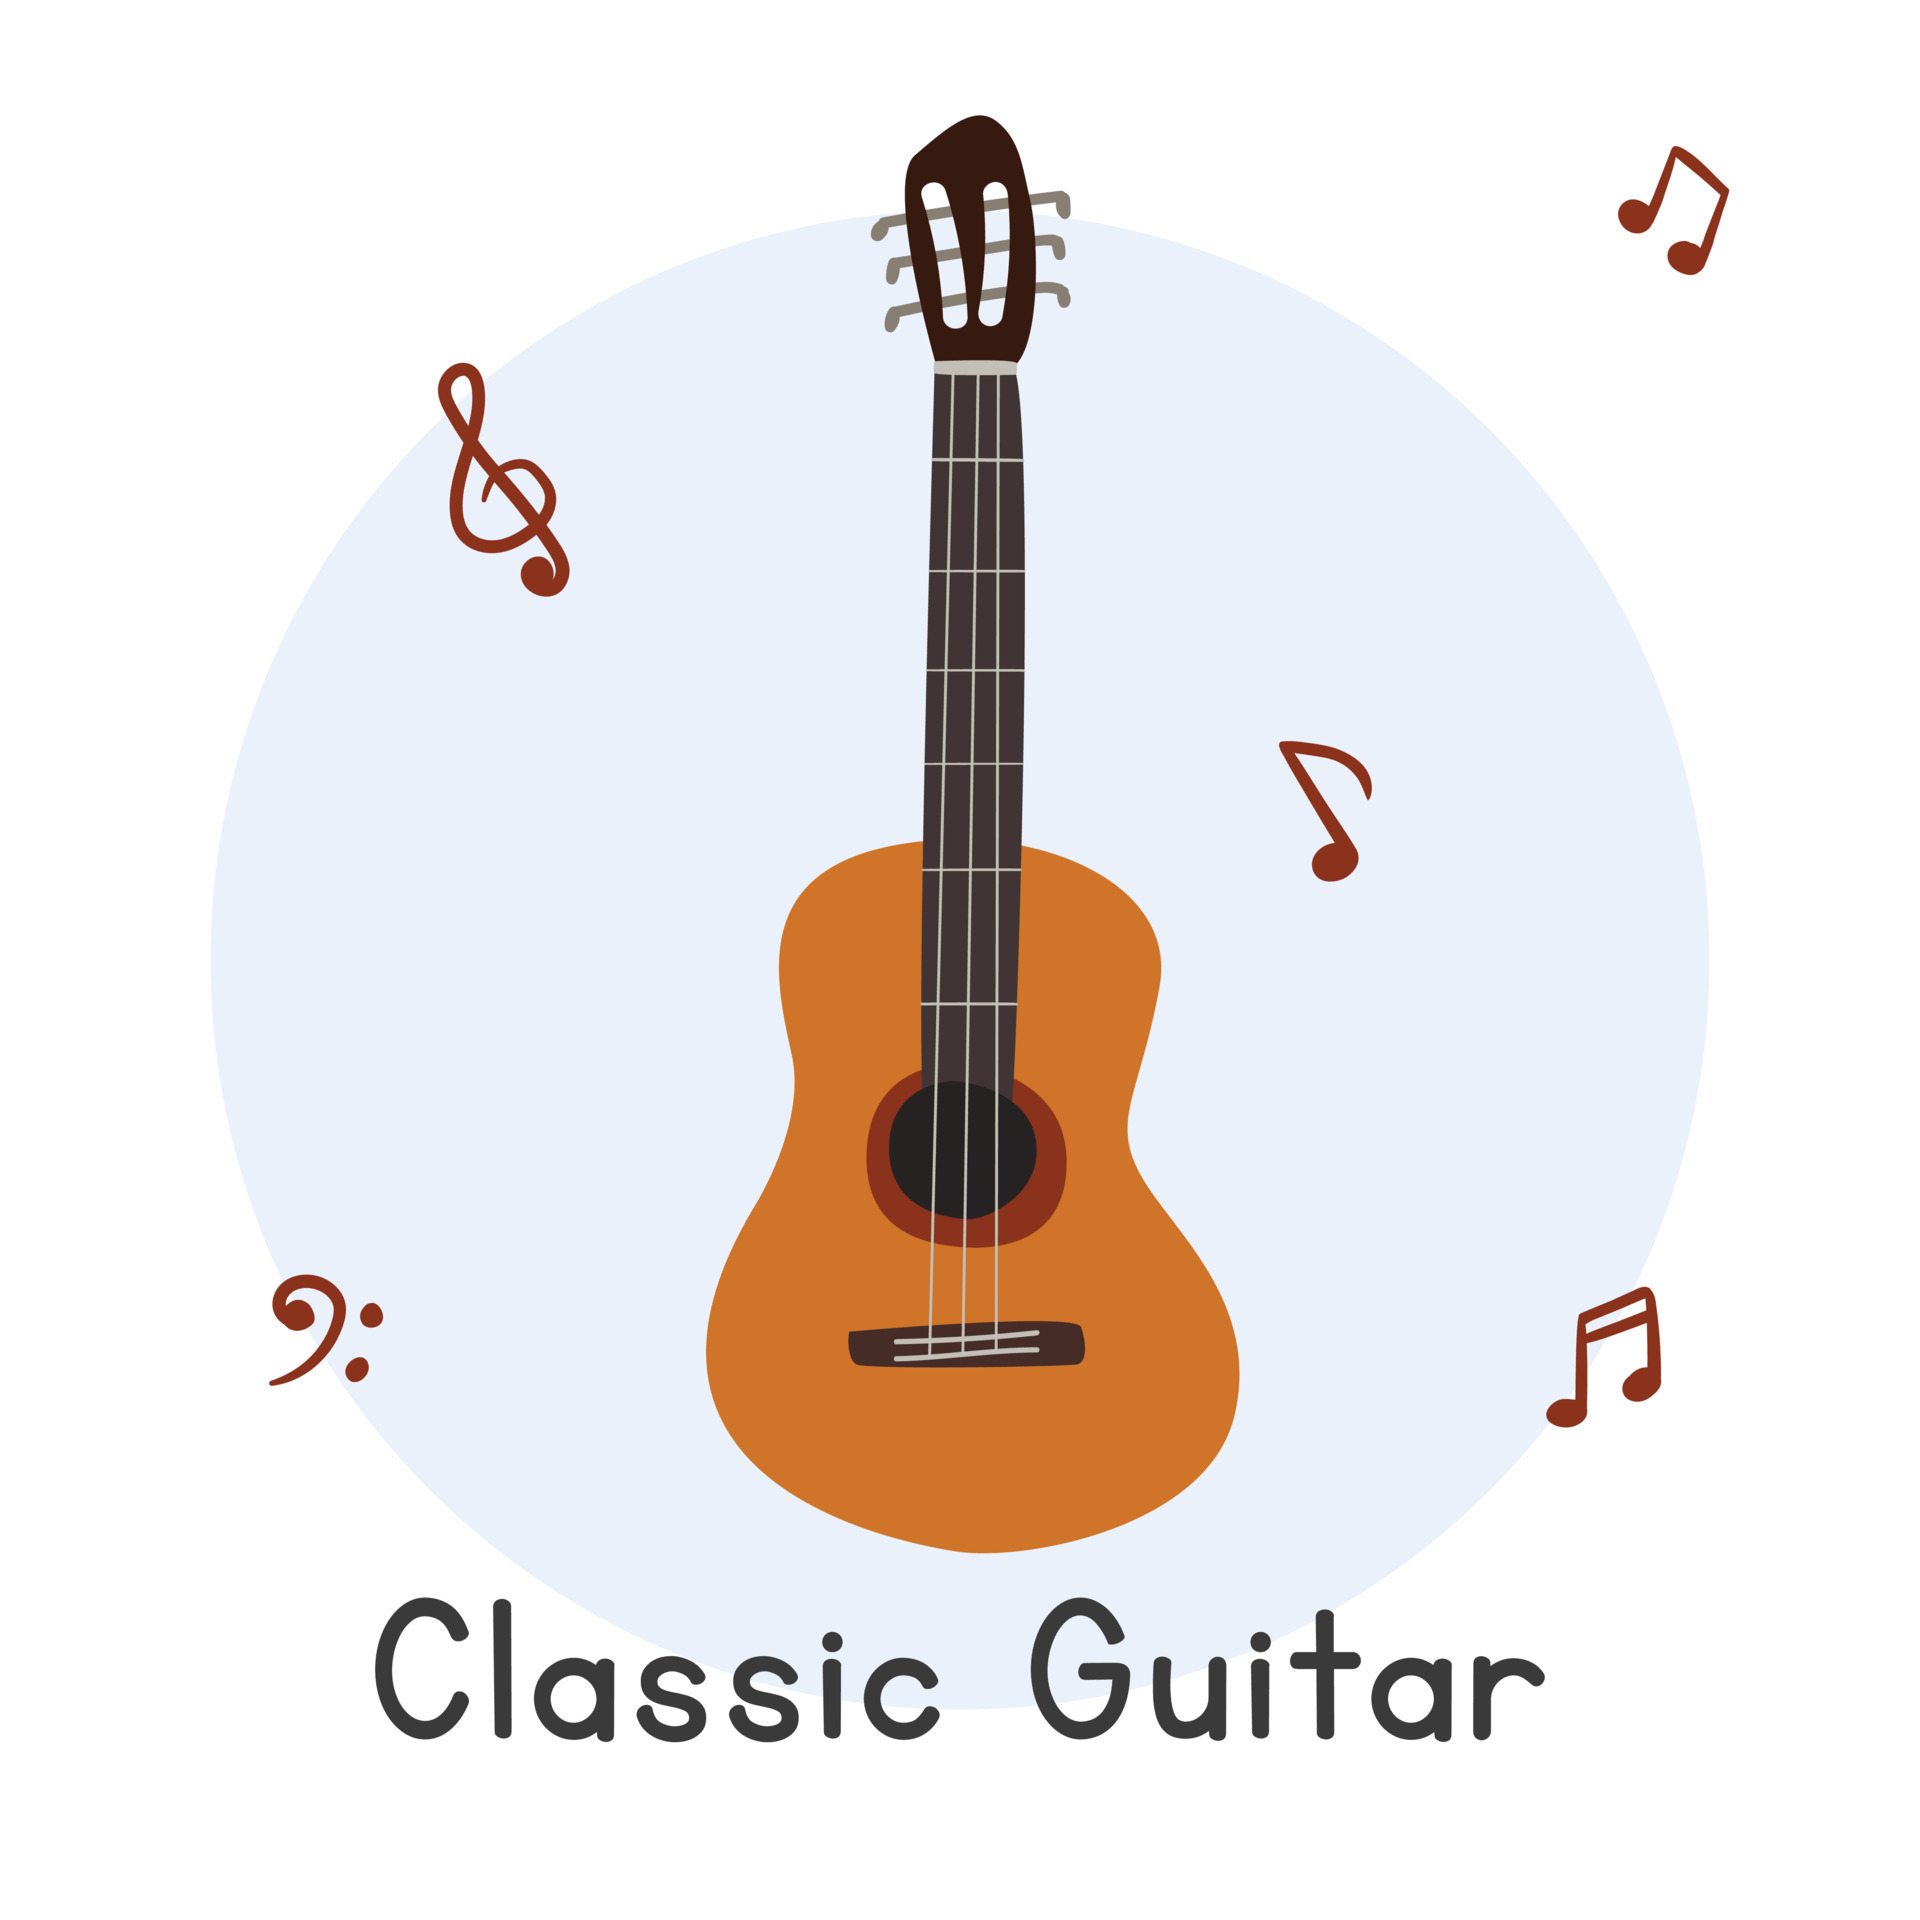 https://static.vecteezy.com/ti/vecteur-libre/p3/19134287-style-de-dessin-anime-de-clipart-de-guitare-classique-illustrationle-plate-d-instrument-de-musique-a-cordes-de-guitare-classique-marron-mignon-simple-instrument-a-cordes-style-doodle-dessine-a-la-main-conception-de-vecteur-de-guitare-classique-vectoriel.jpg